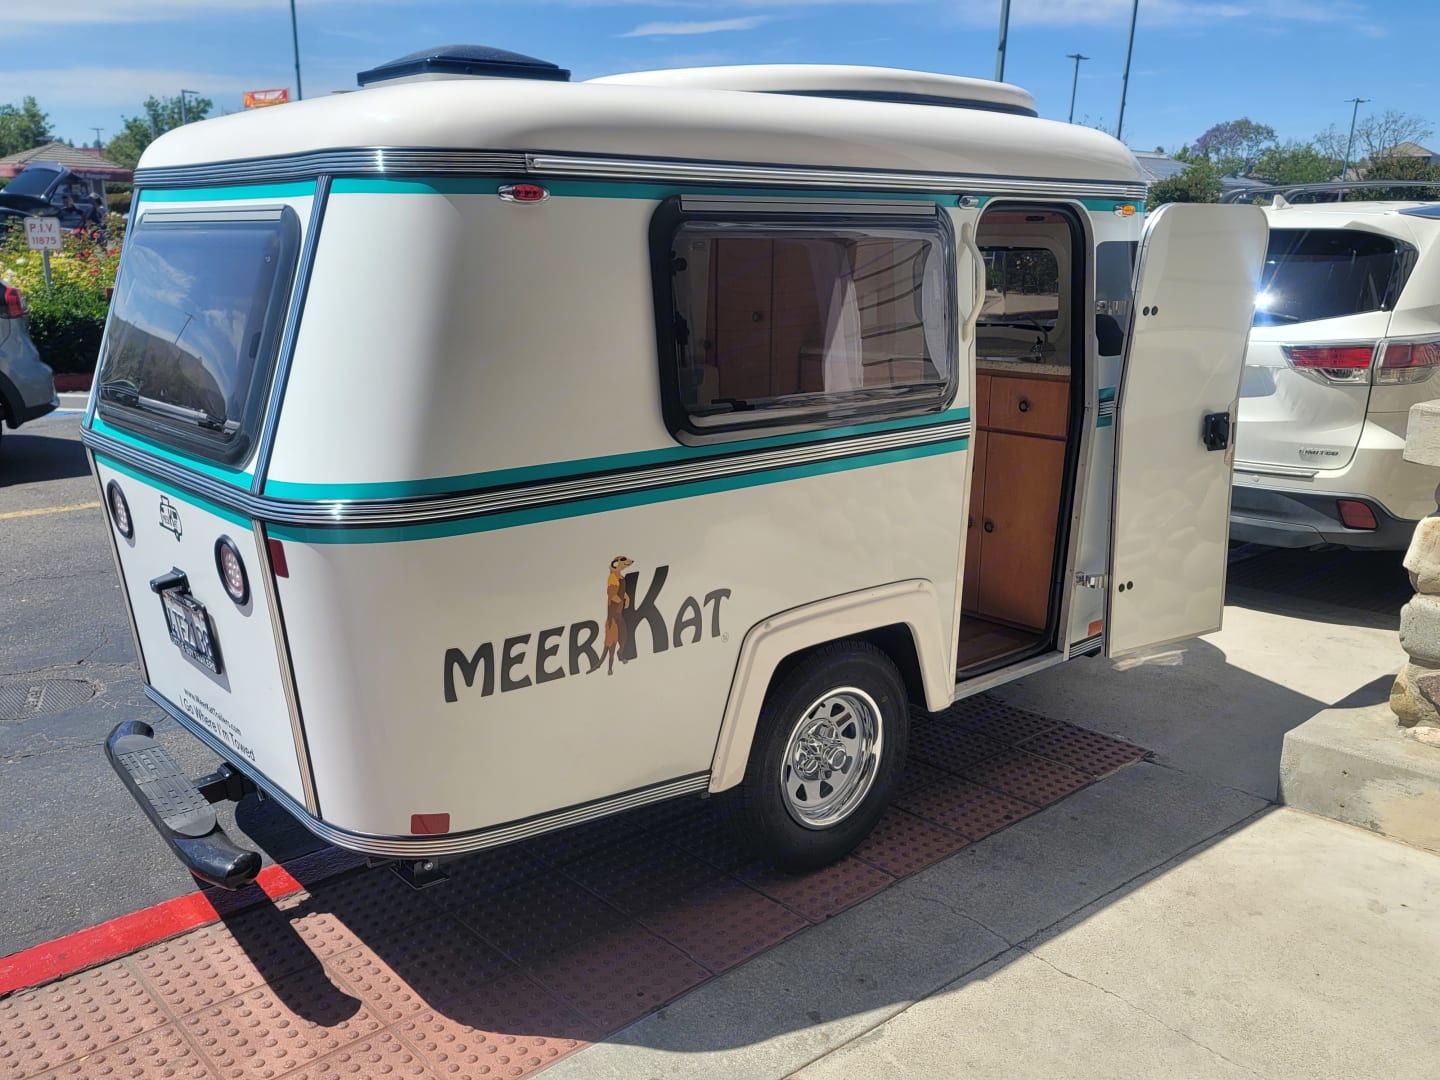 meerkat travel trailer dealers